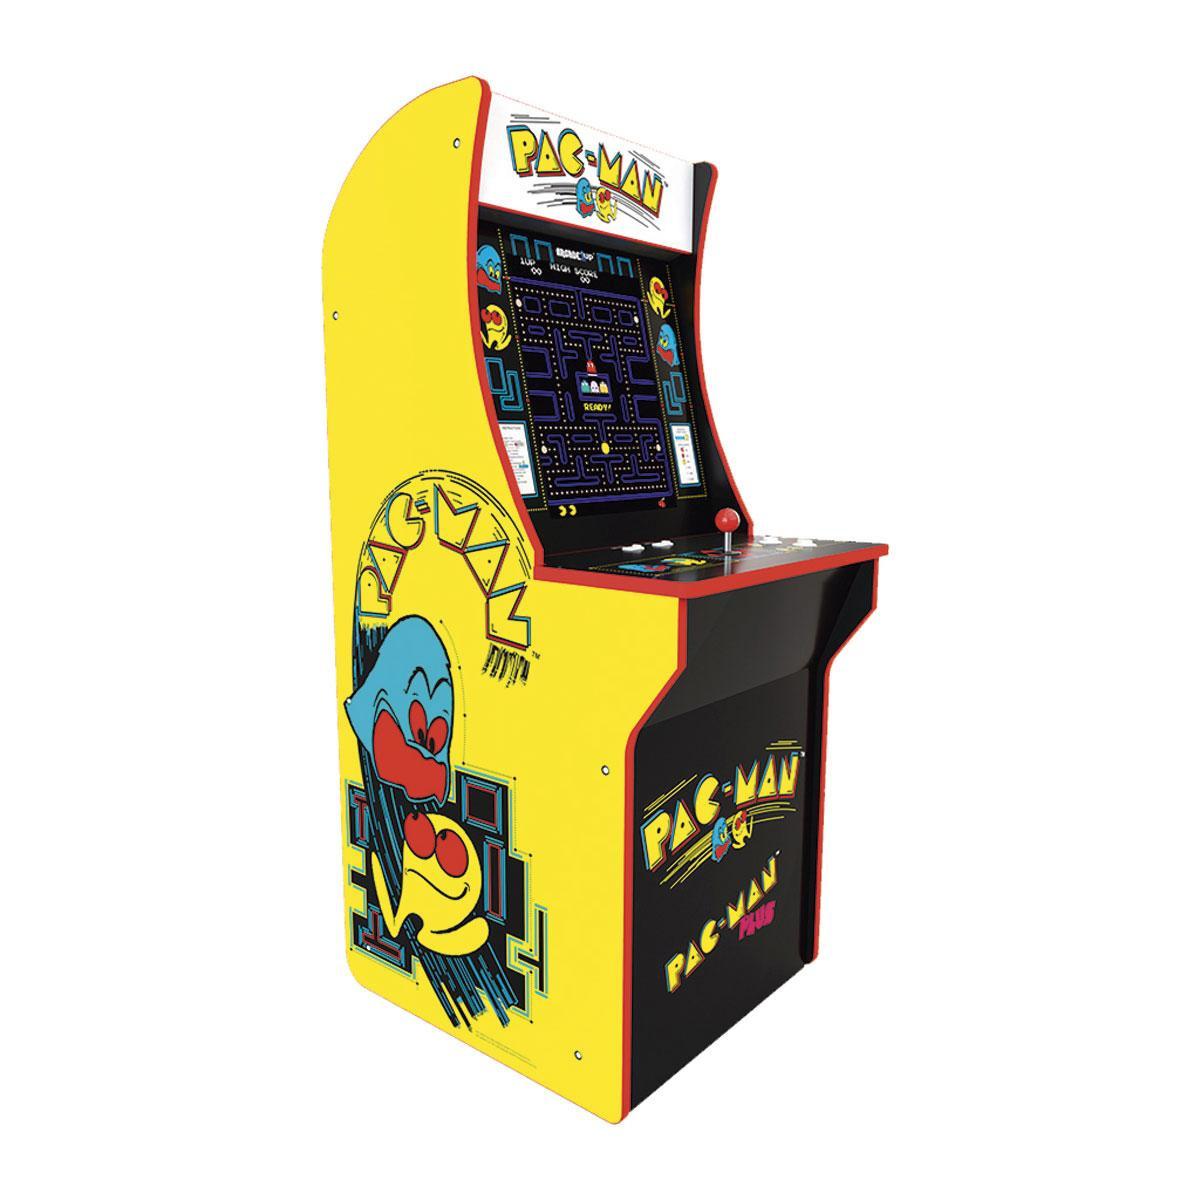 À contre-courant de son époque, Pac-Man était non-violent et sans mort d'adversaire.